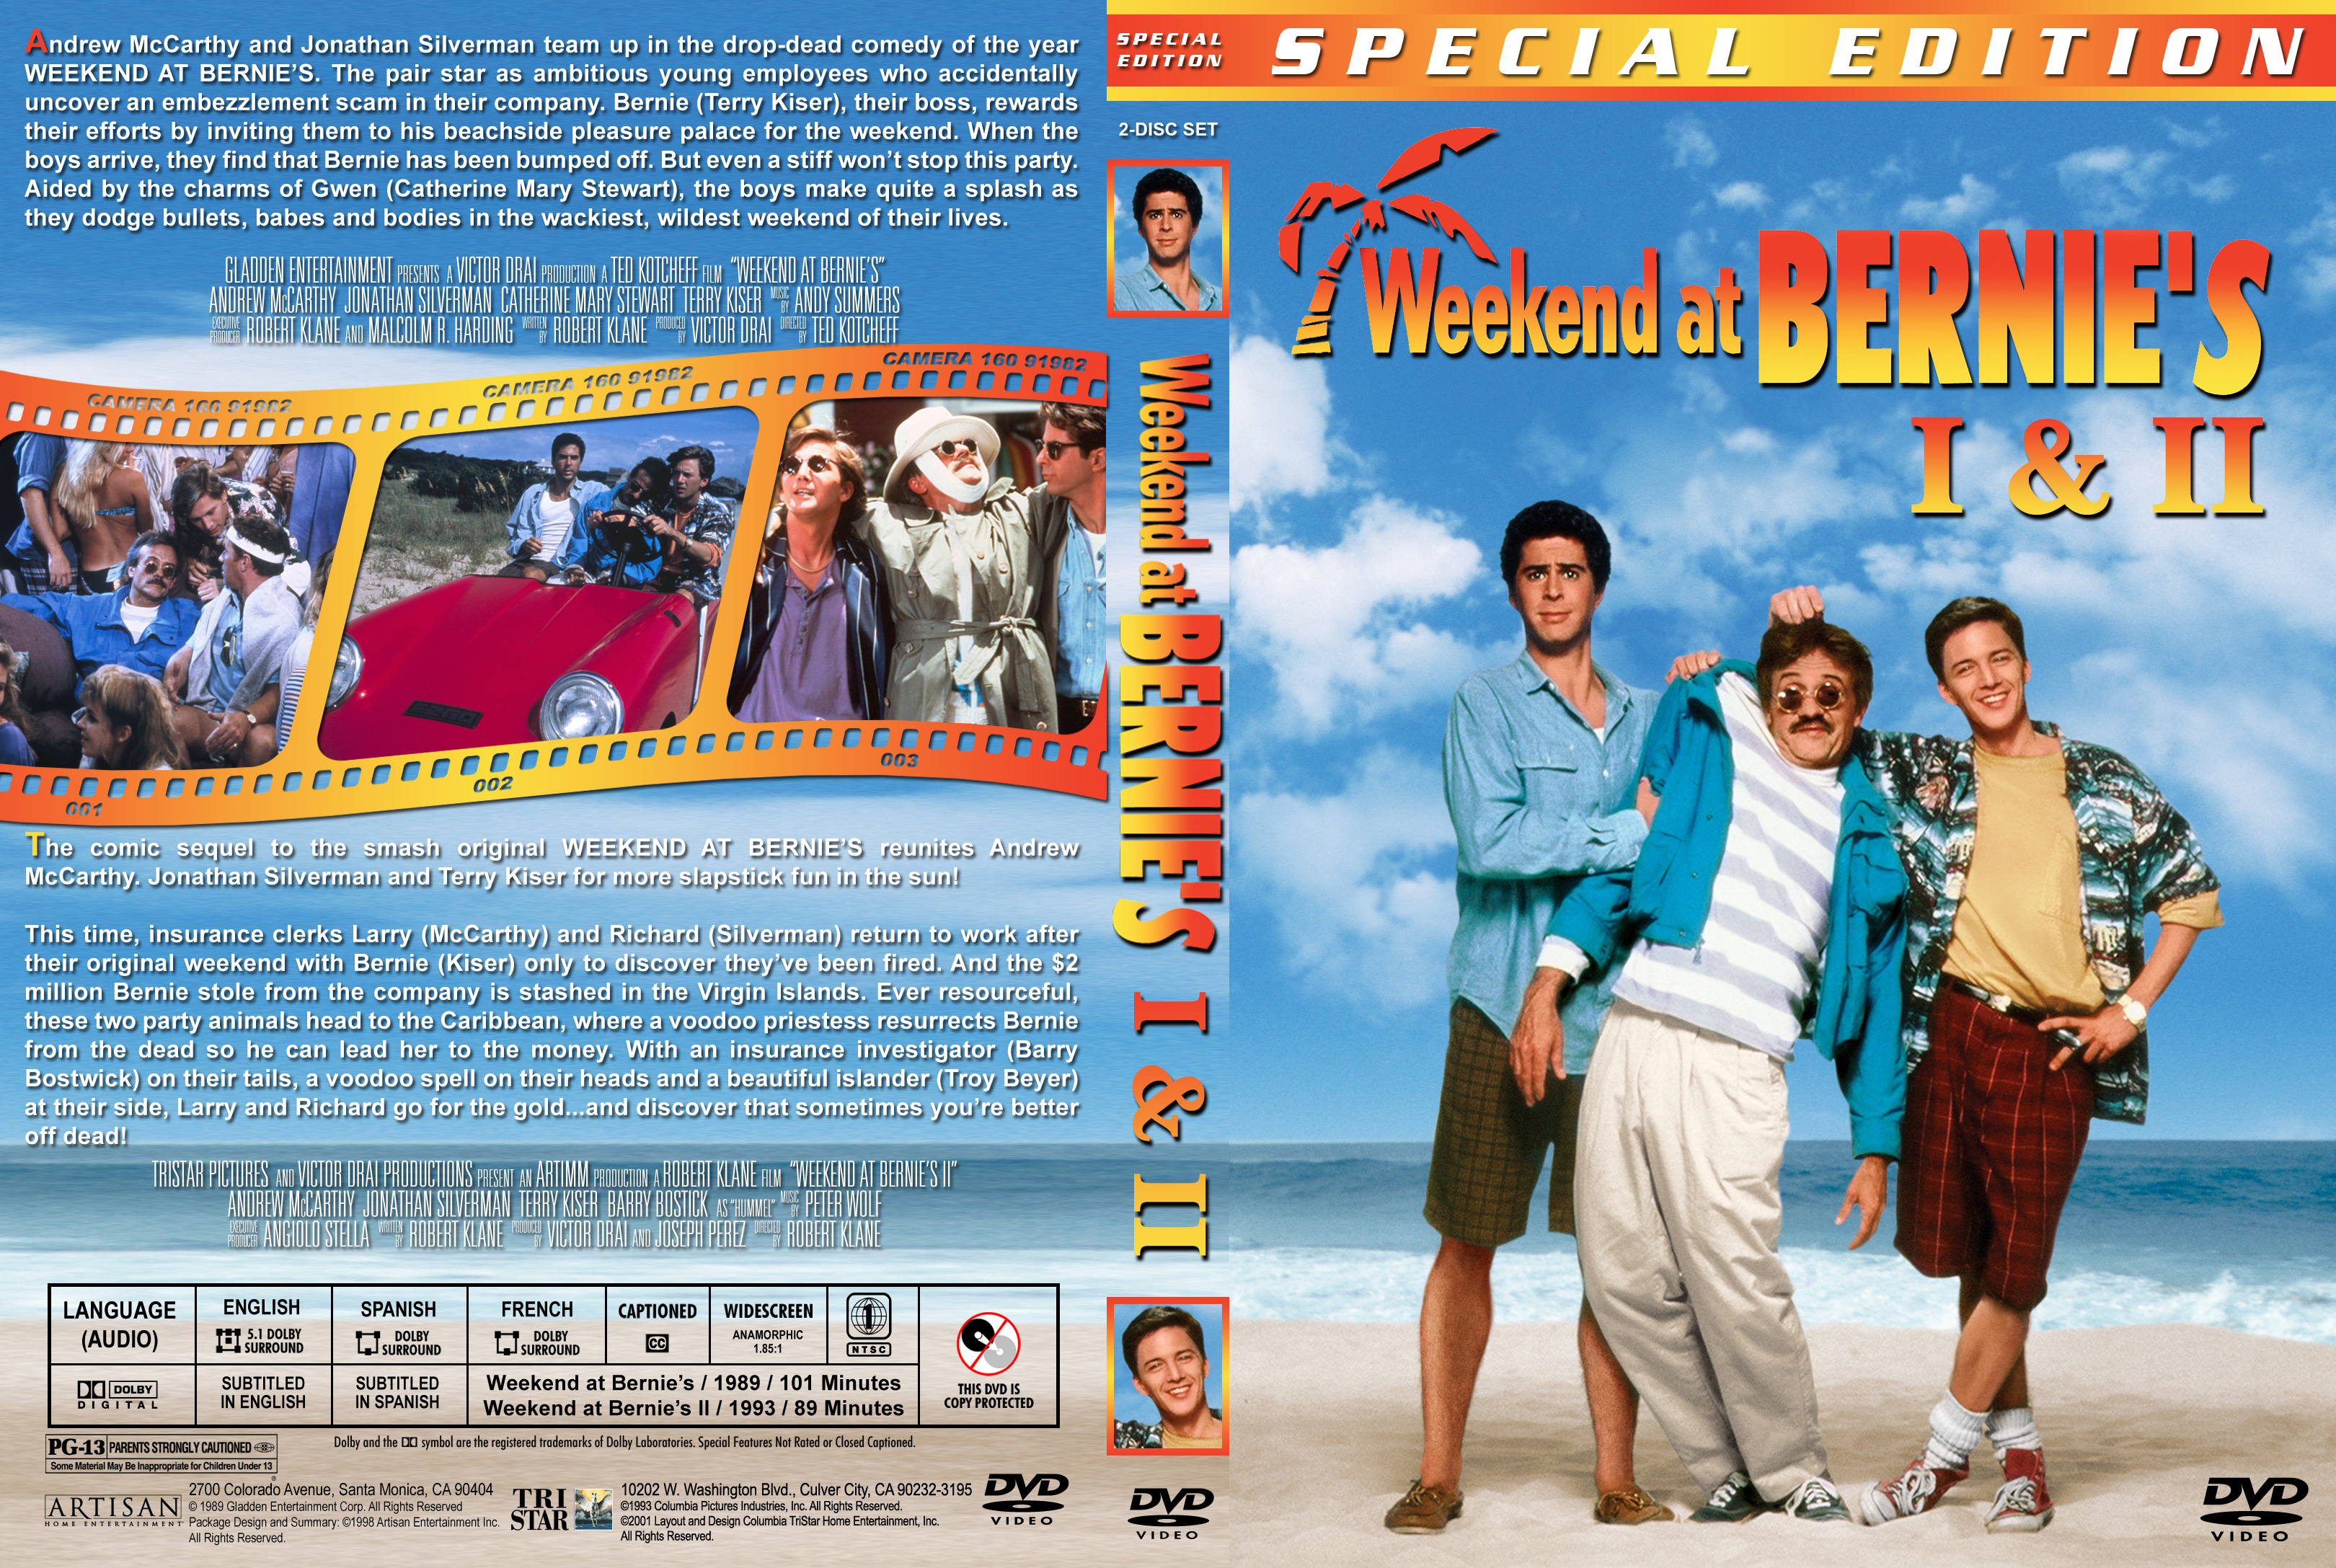 Уикенд у берни 2. Уикенд у Берни 1993 двд. Уикенд у Берни обложка. Обложка для Blu-ray уик-энд у Берни 1989.